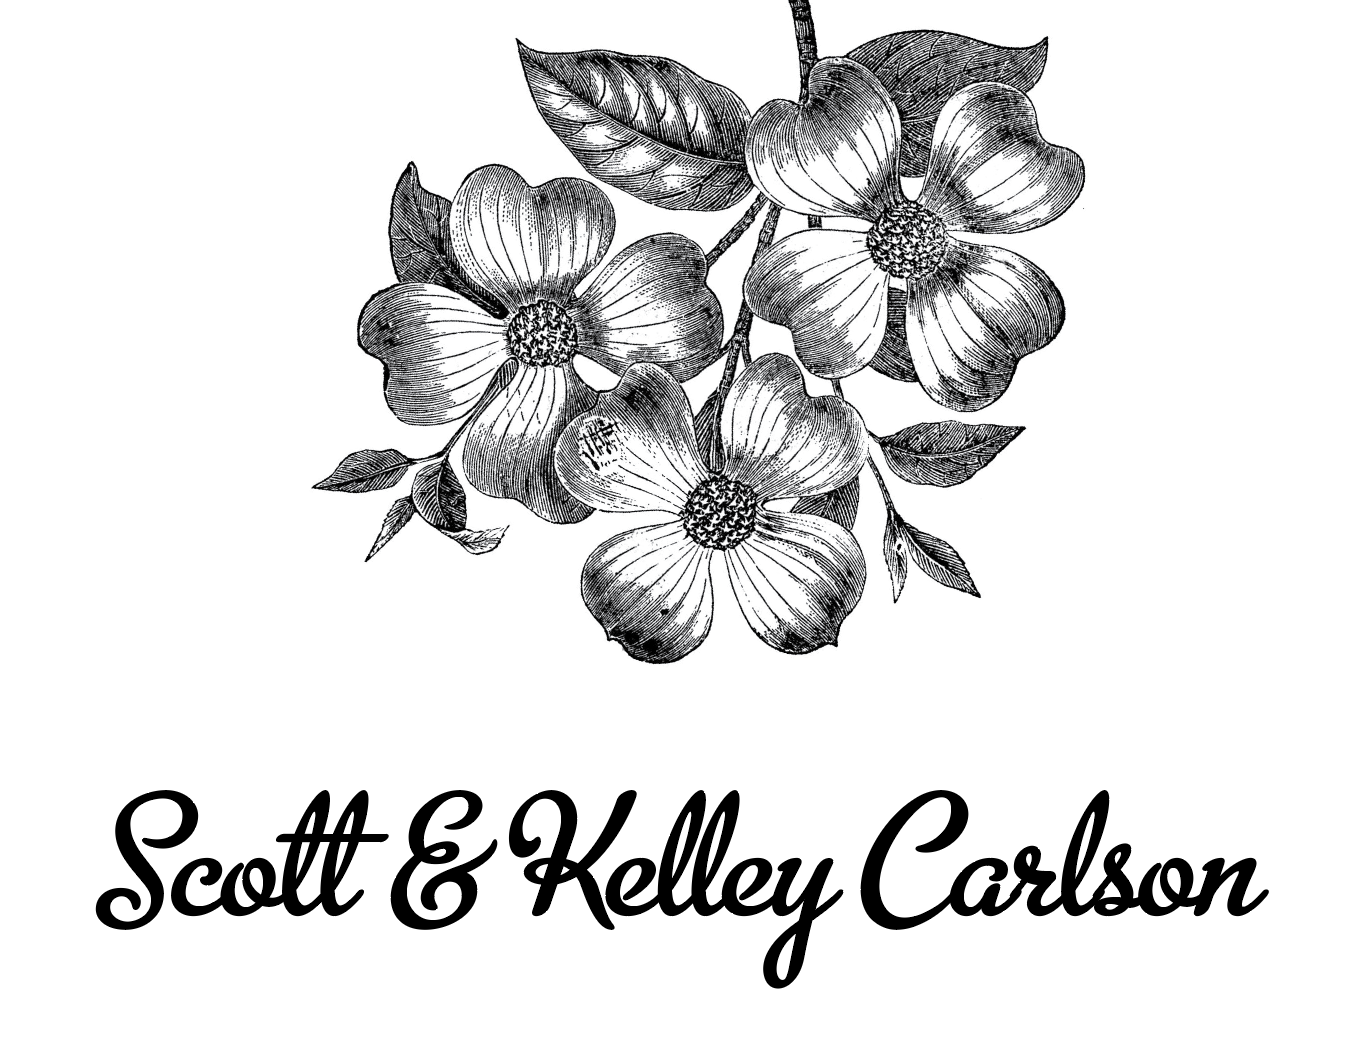 Scott & Kelley Carlson written below flowers